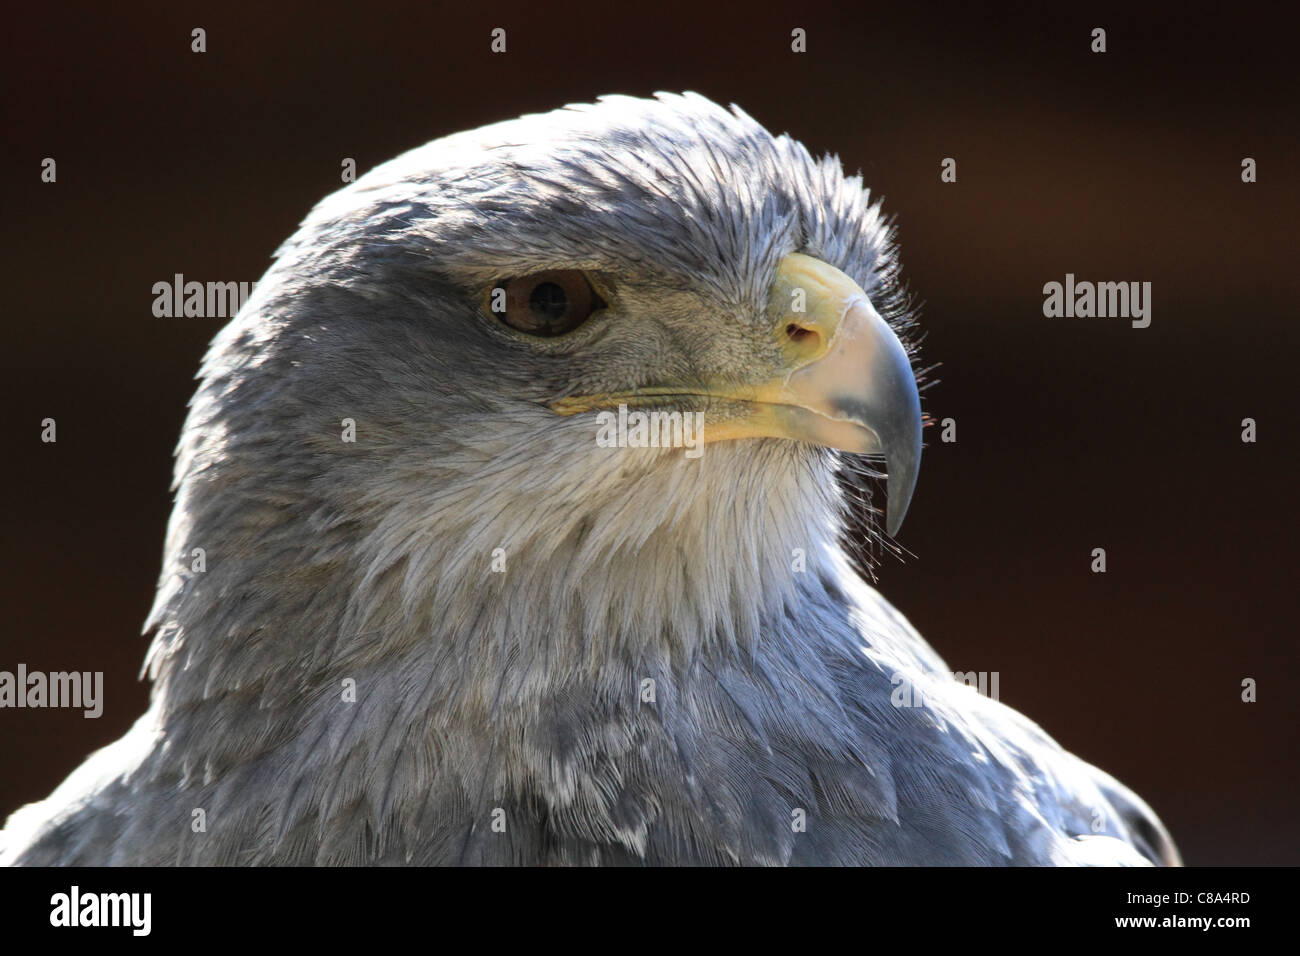 Faucon crécerelle portrait-eagle Buzzard Banque D'Images